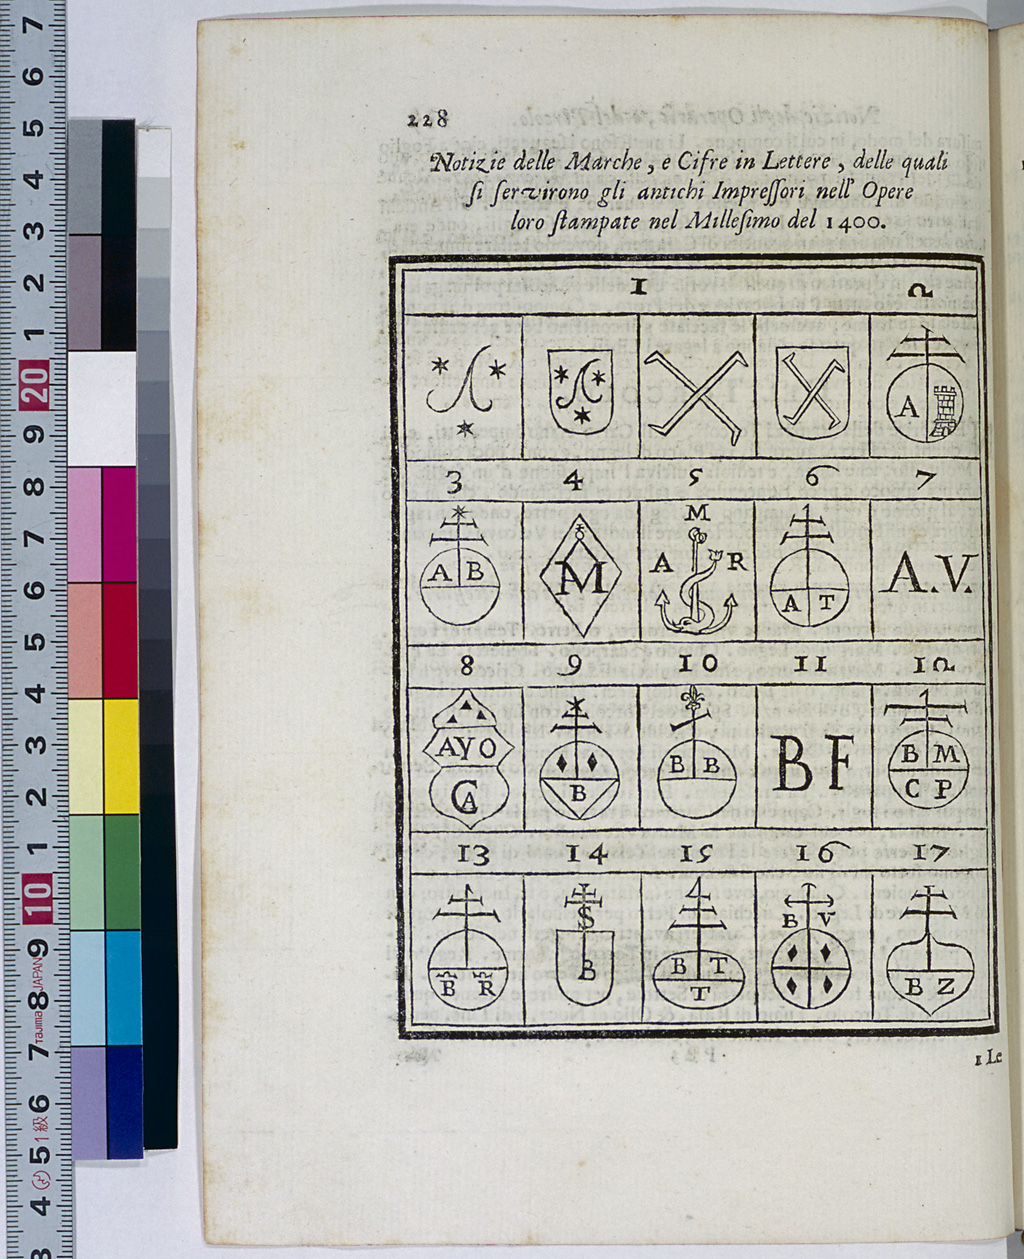 A collection of printers' devices in P. A. Orlandi: "Origine e progressi della stampa" (1722)